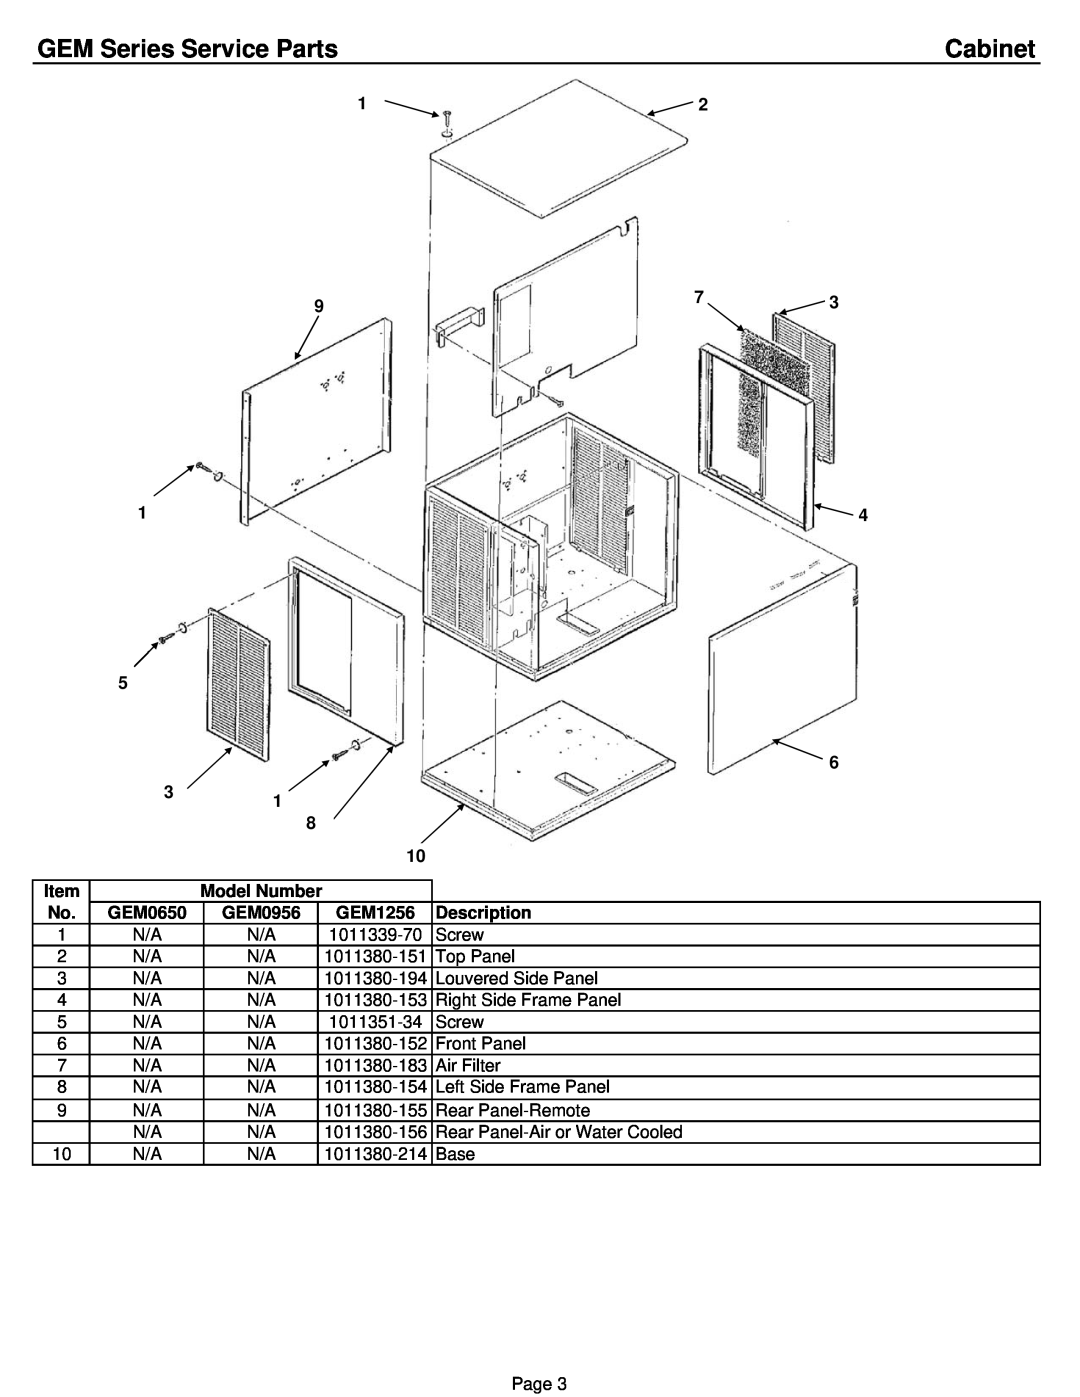 Ice-O-Matic GEM0956A/W/R, GEM1256A/W/R, GEM0650A/W/R, GEM0655 manual GEM Series Service Parts, Cabinet, Model Number 